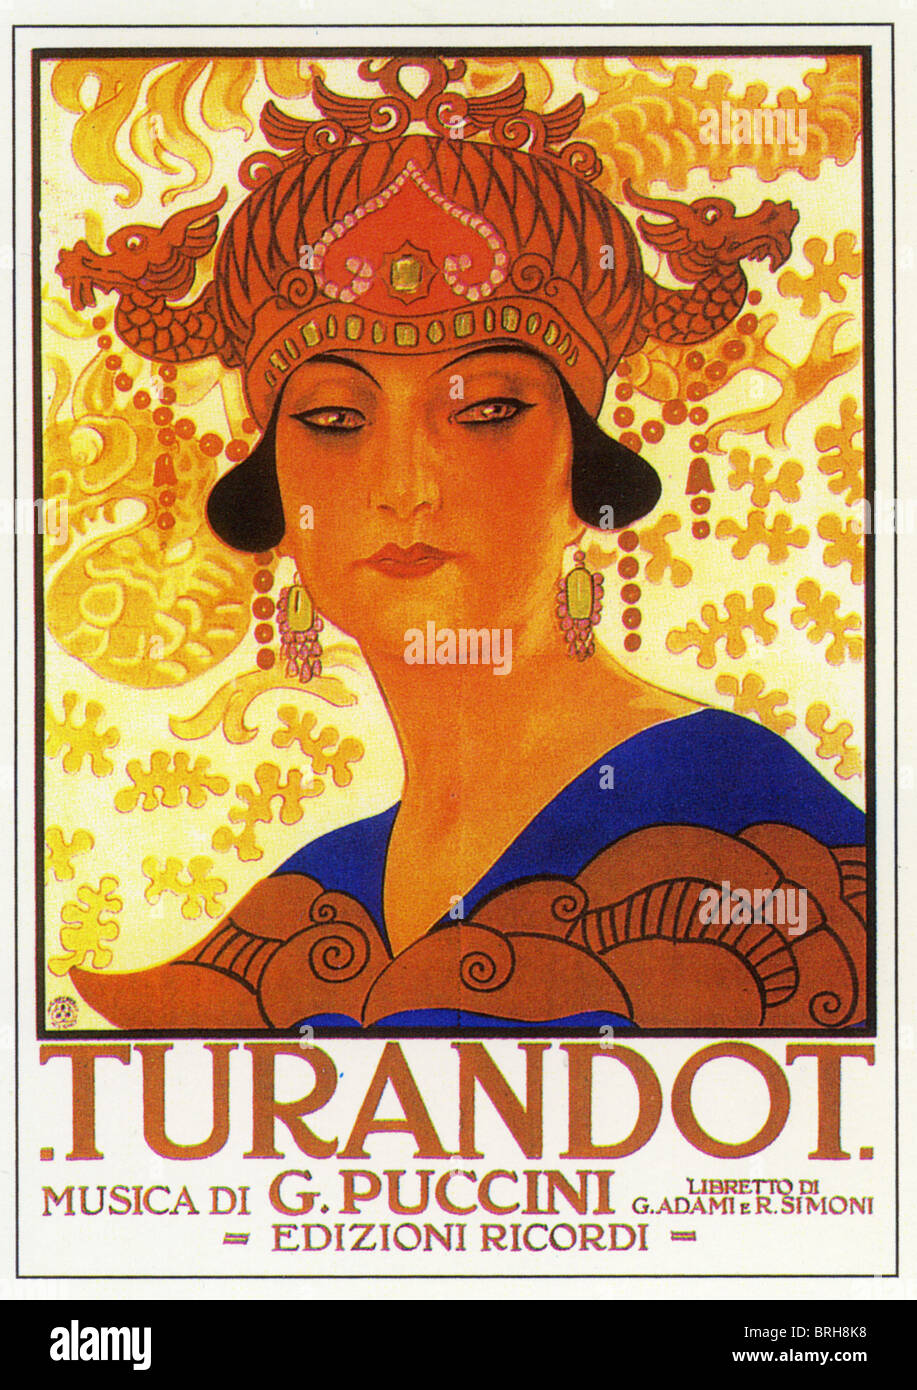 Affiche pour l'opéra TURANDOT de Giacomo Puccini Banque D'Images